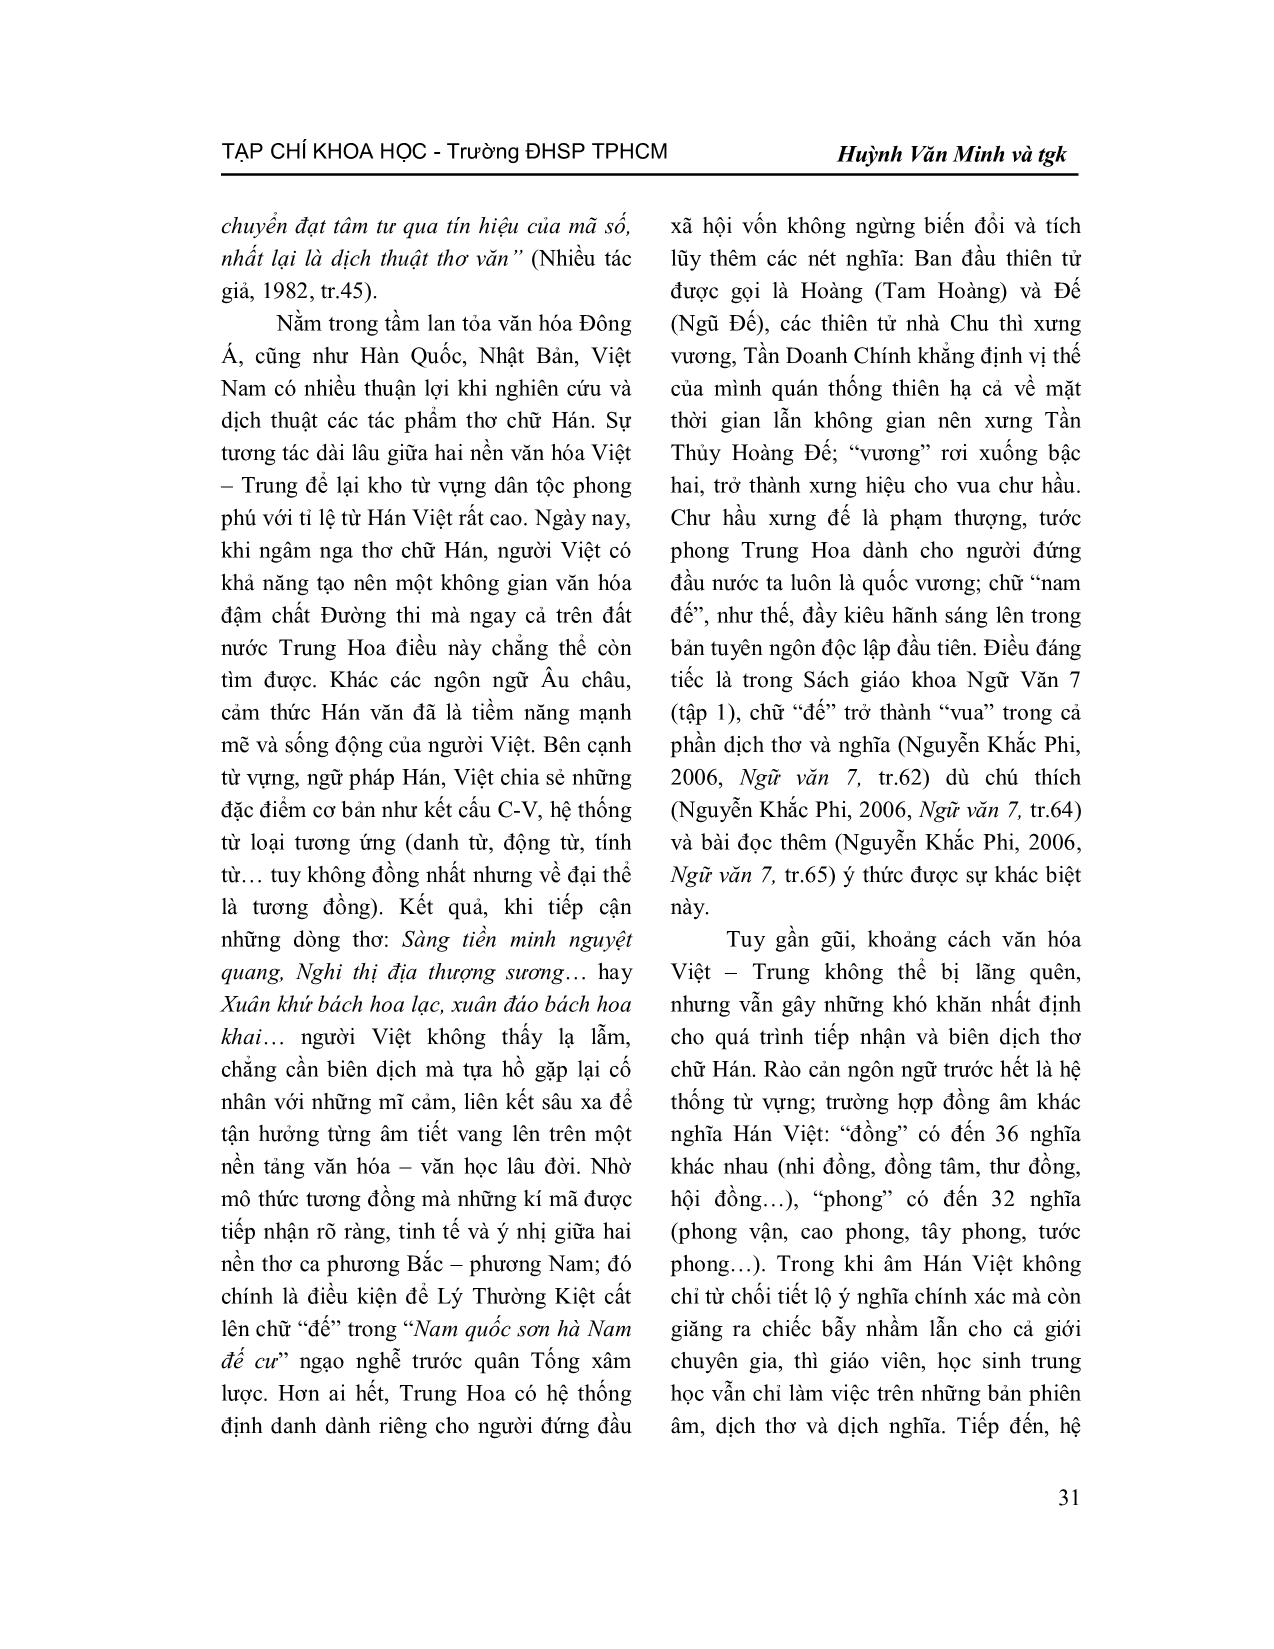 Tiếp cận văn bản thơ chữ Hán trong chương trình Trung học từ góc độ từ vựng, ngữ pháp trang 2